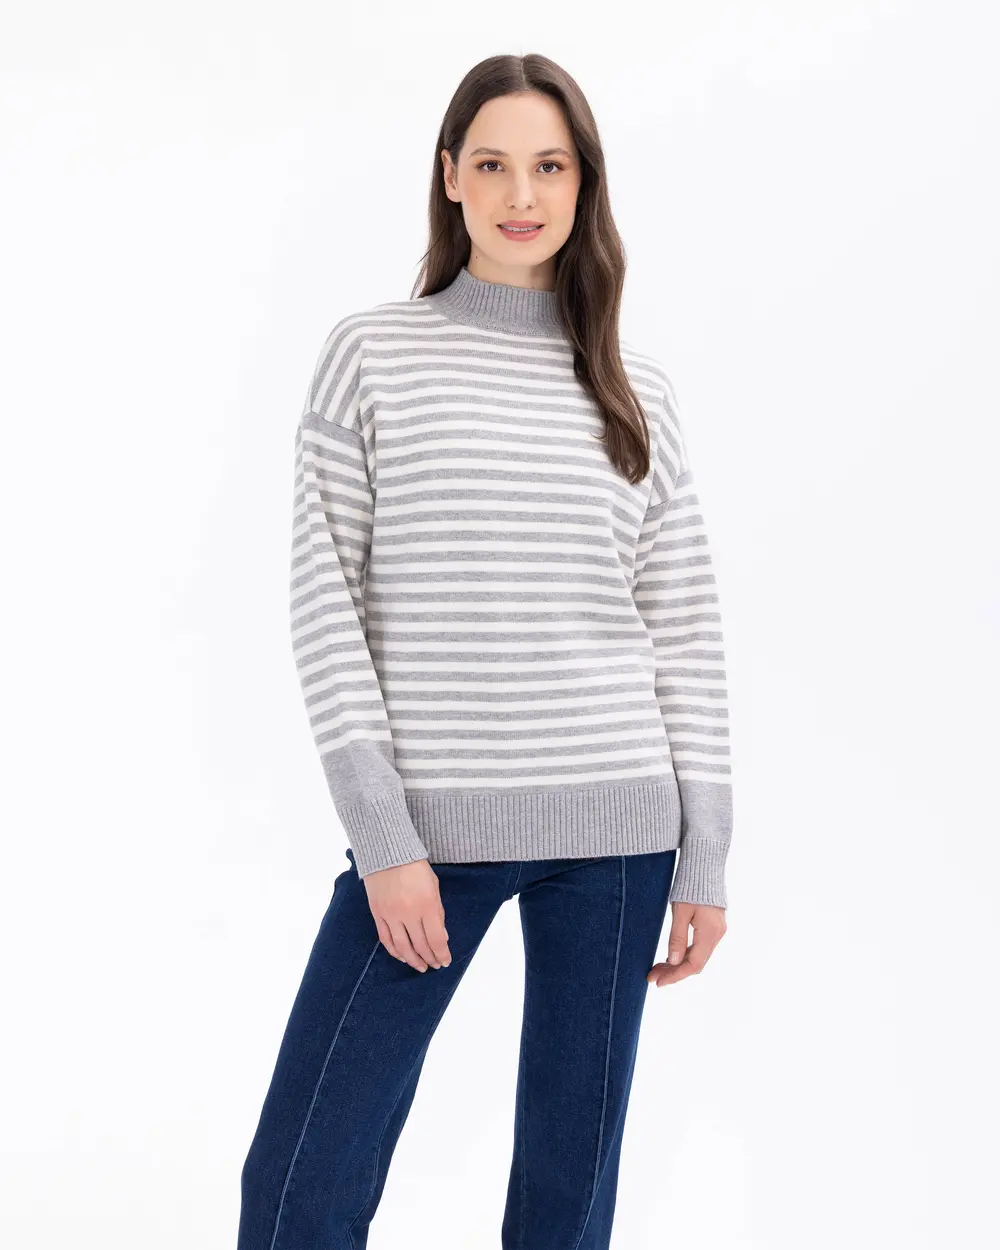 Stripe Patterned High Collar Knitwear Sweater